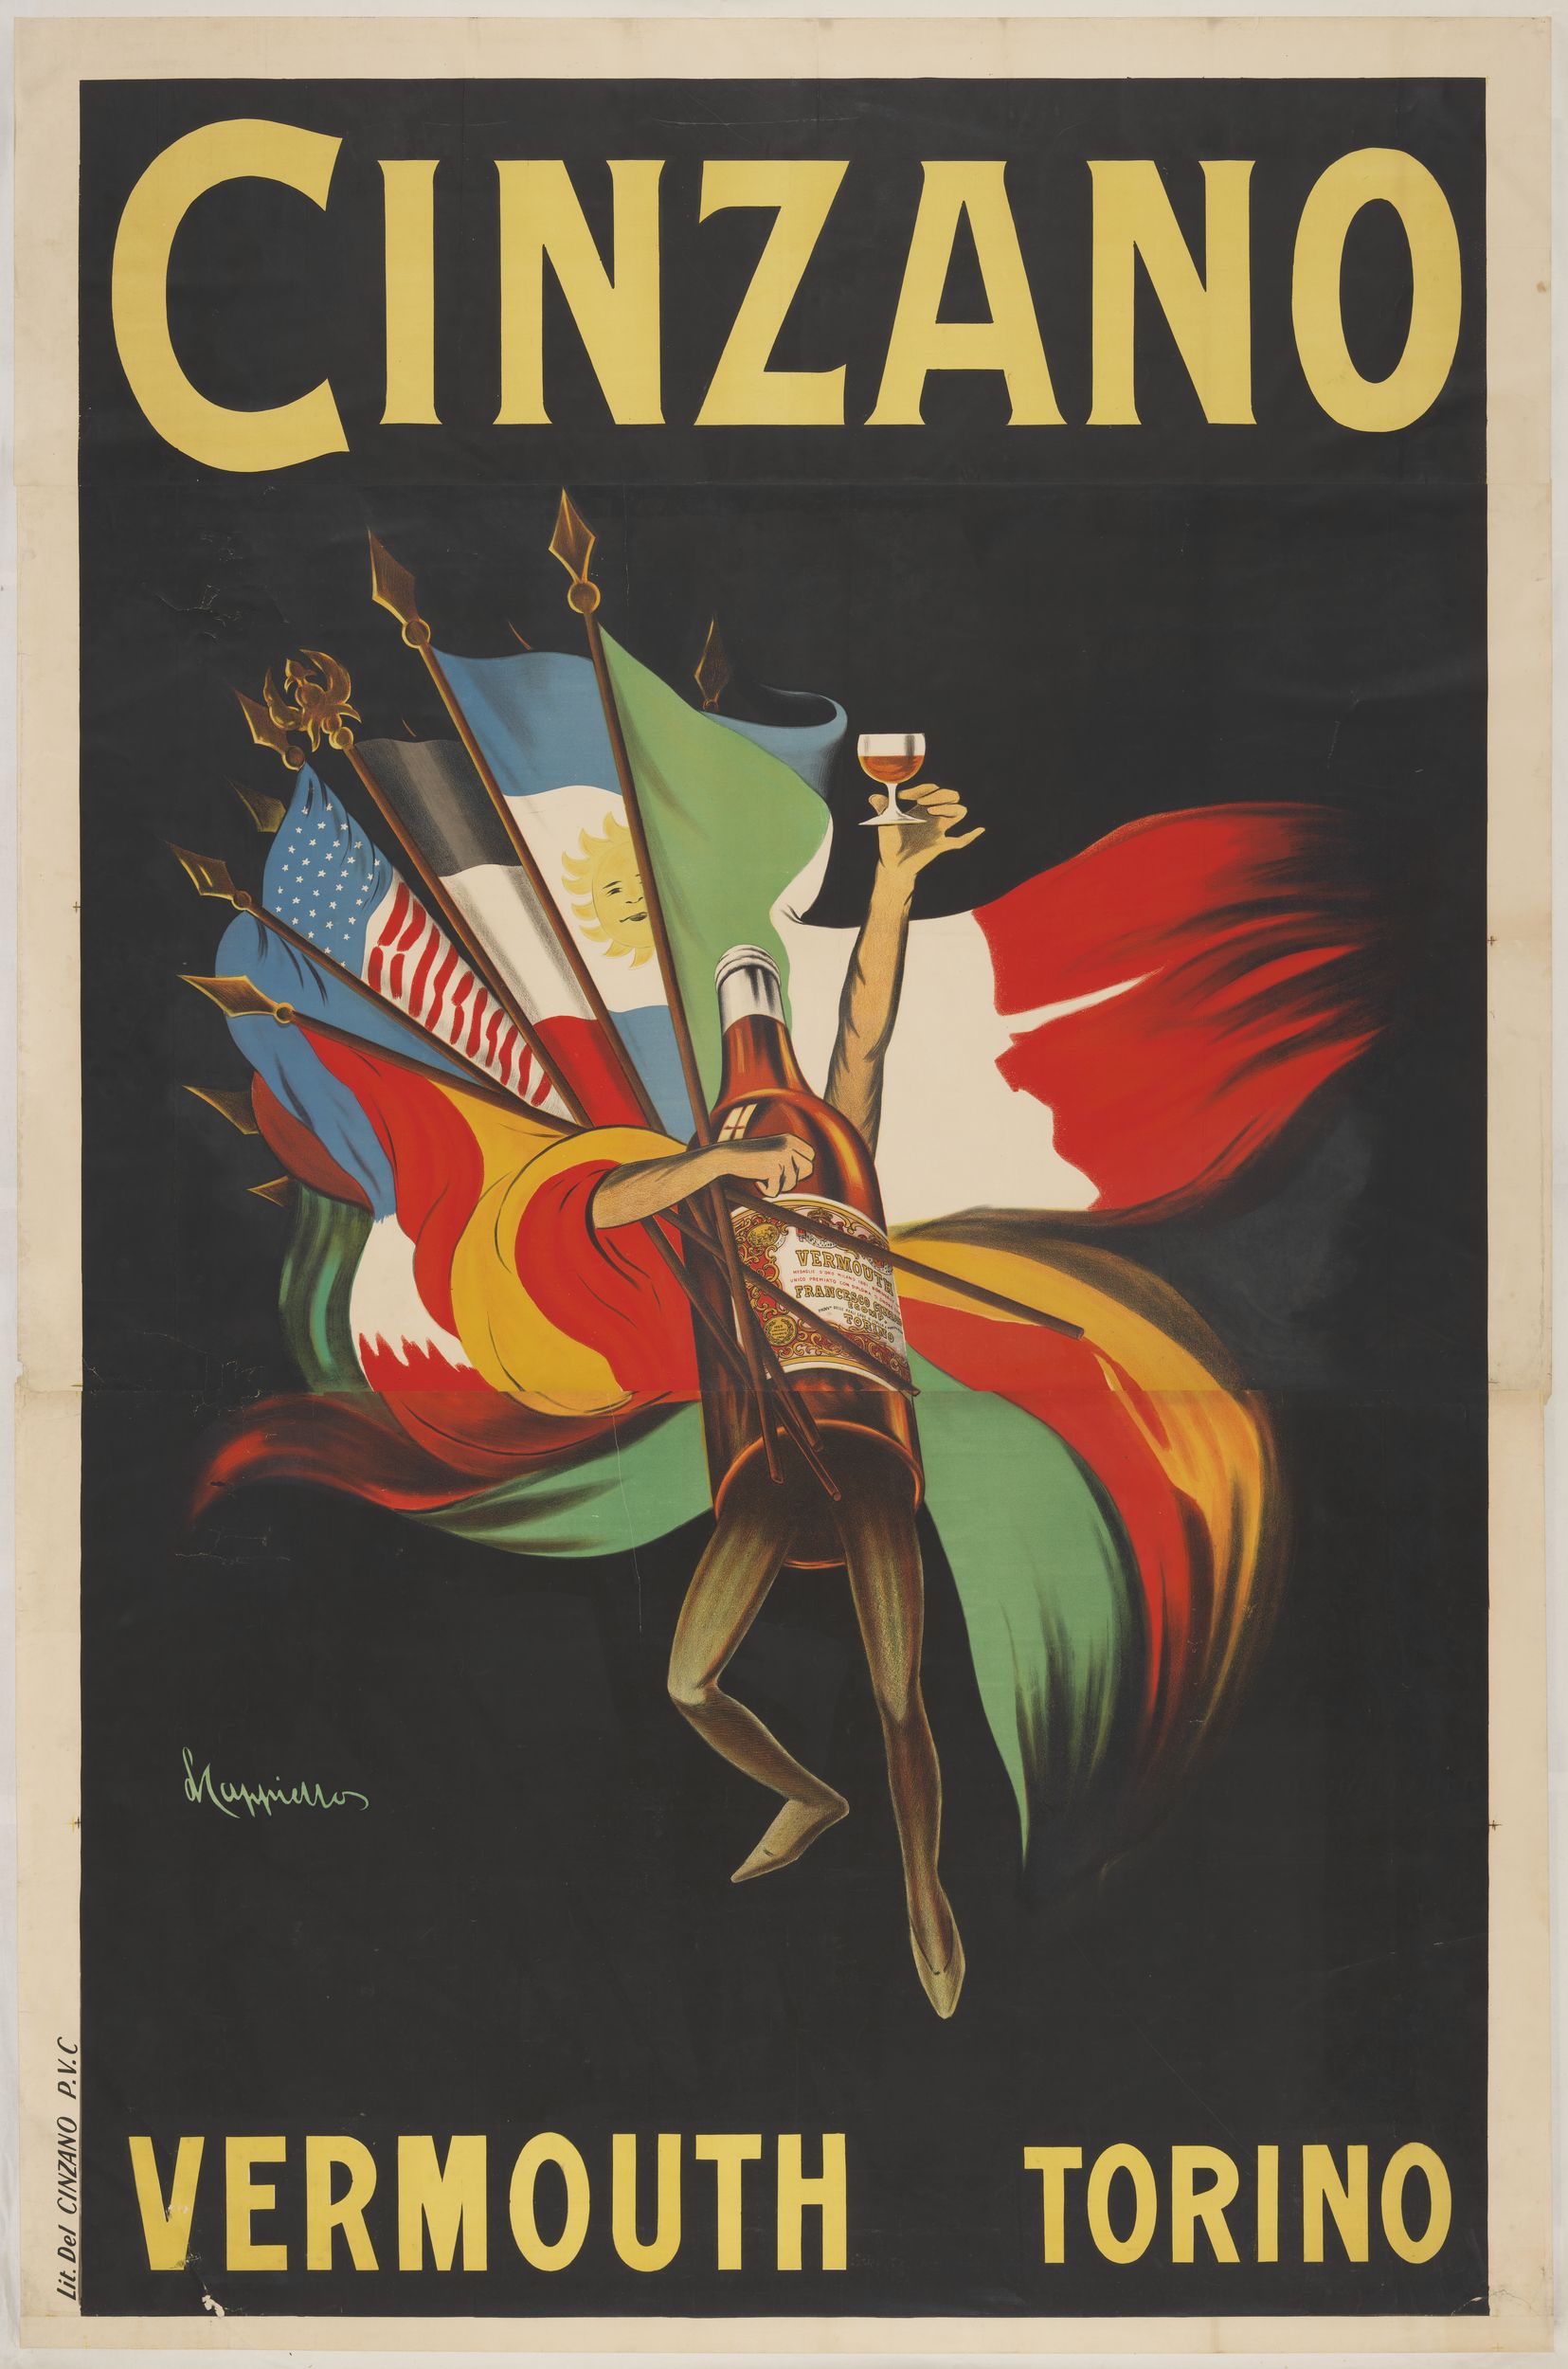 Cinzano Vermouth Torino : affiche publicitaire (lithographie couleur) très grand format (1910-1920, cote : 7FI/3505 usage privé uniquement)